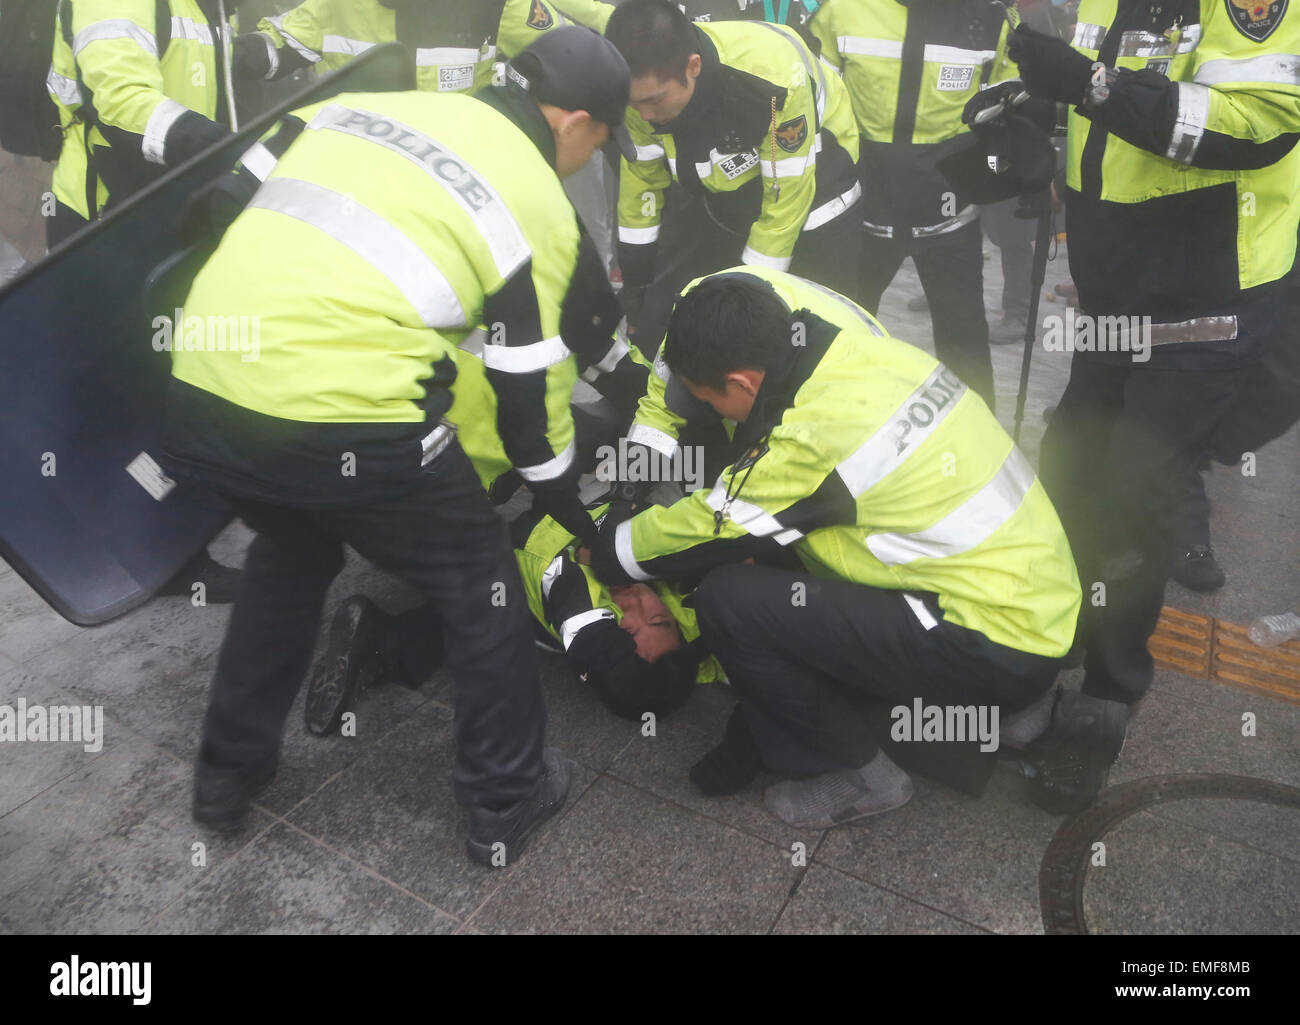 Traghetto tragedia protesta, Apr 18, 2015 : poliziotti di controllare uno di loro collega poliziotti feriti come essi bloccare i manifestanti cercando di marzo verso il gate di Gwanghwamun vicino alla presidential Blue House a Seul, in Corea del Sud. Circa 30.000 persone (8.000 dalla polizia stima) hanno dimostrato il 18 aprile, due giorni dopo il primo anniversario del traghetto Sewol tragedia ad esigere che il governo avanzi la speciale legge Sewol decreto di attuazione, recupero del traghetto e tenere una approfondita indagine nella tragedia. Essi hanno anche chiamato per dimissioni del Presidente Parco-geun hye.La polizia ha imprigionato circa 100 manifestanti Foto Stock